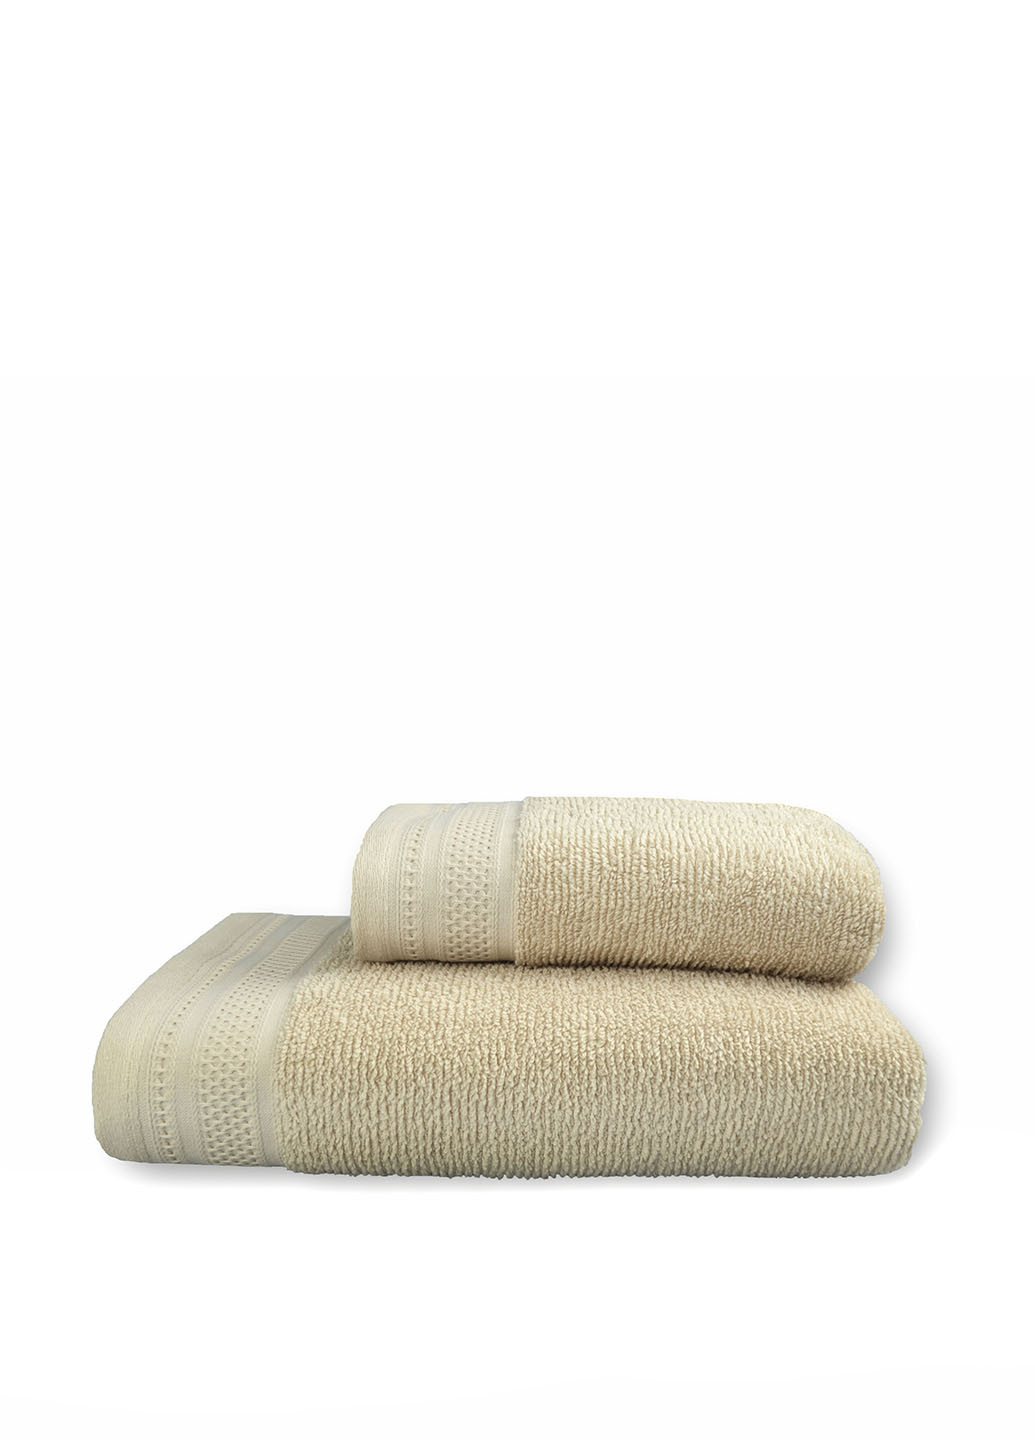 No Brand полотенце, 68х127 см однотонный бежевый производство - Турция